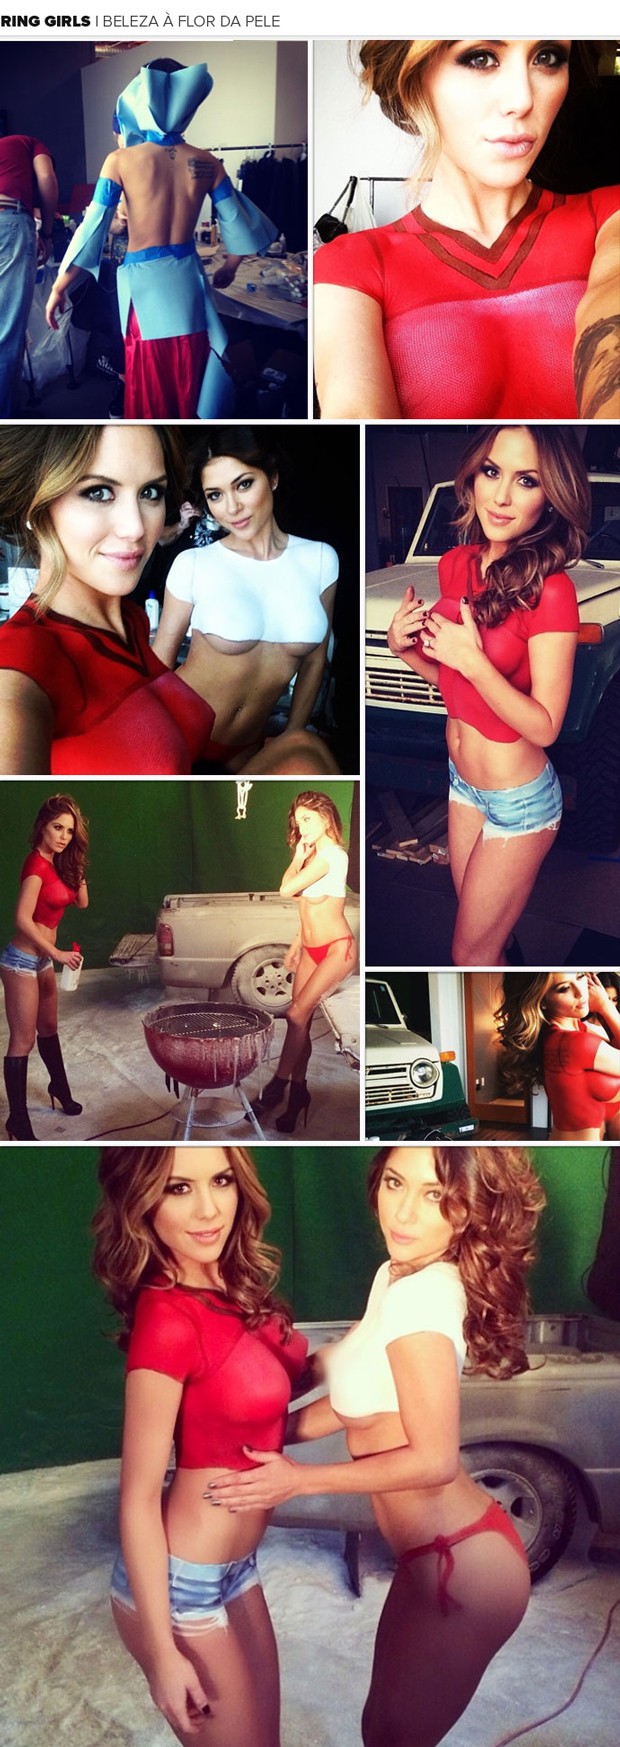 MOSAICO - Ring girls arianny Celeste e Britney Palmer body paint (Foto: Reprodução / Instagram)